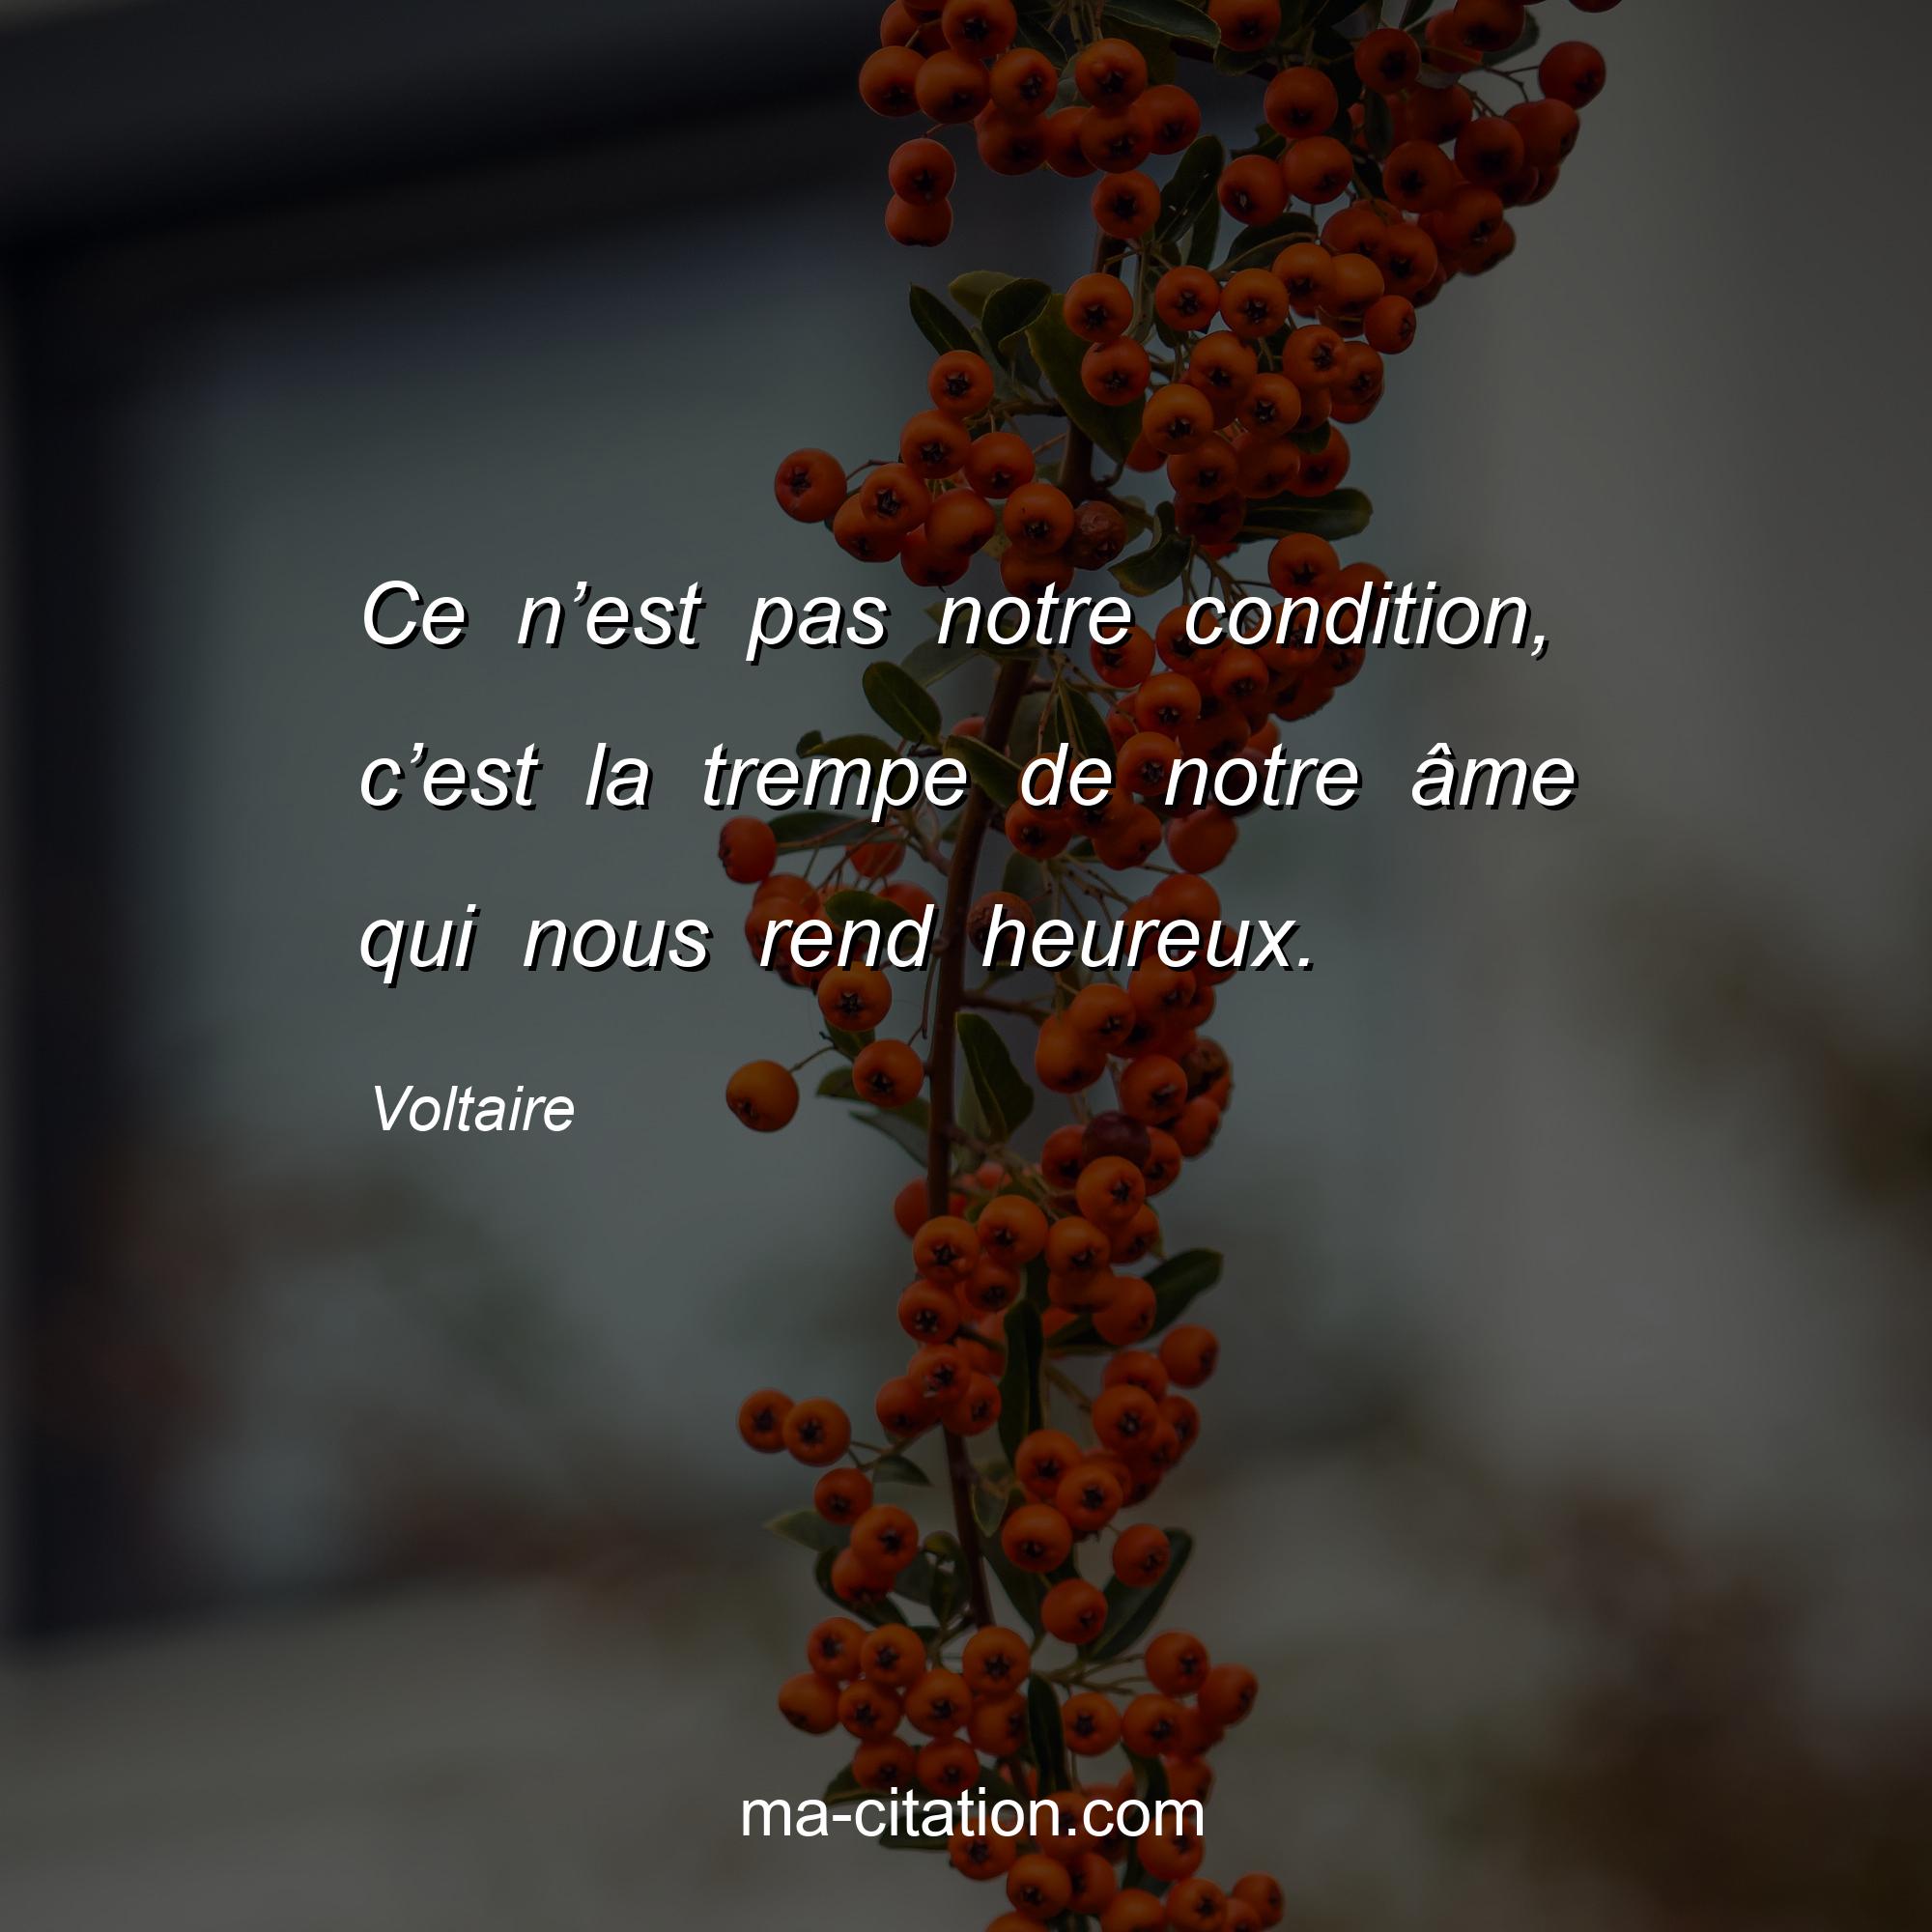 Voltaire : Ce n’est pas notre condition, c’est la trempe de notre âme qui nous rend heureux.